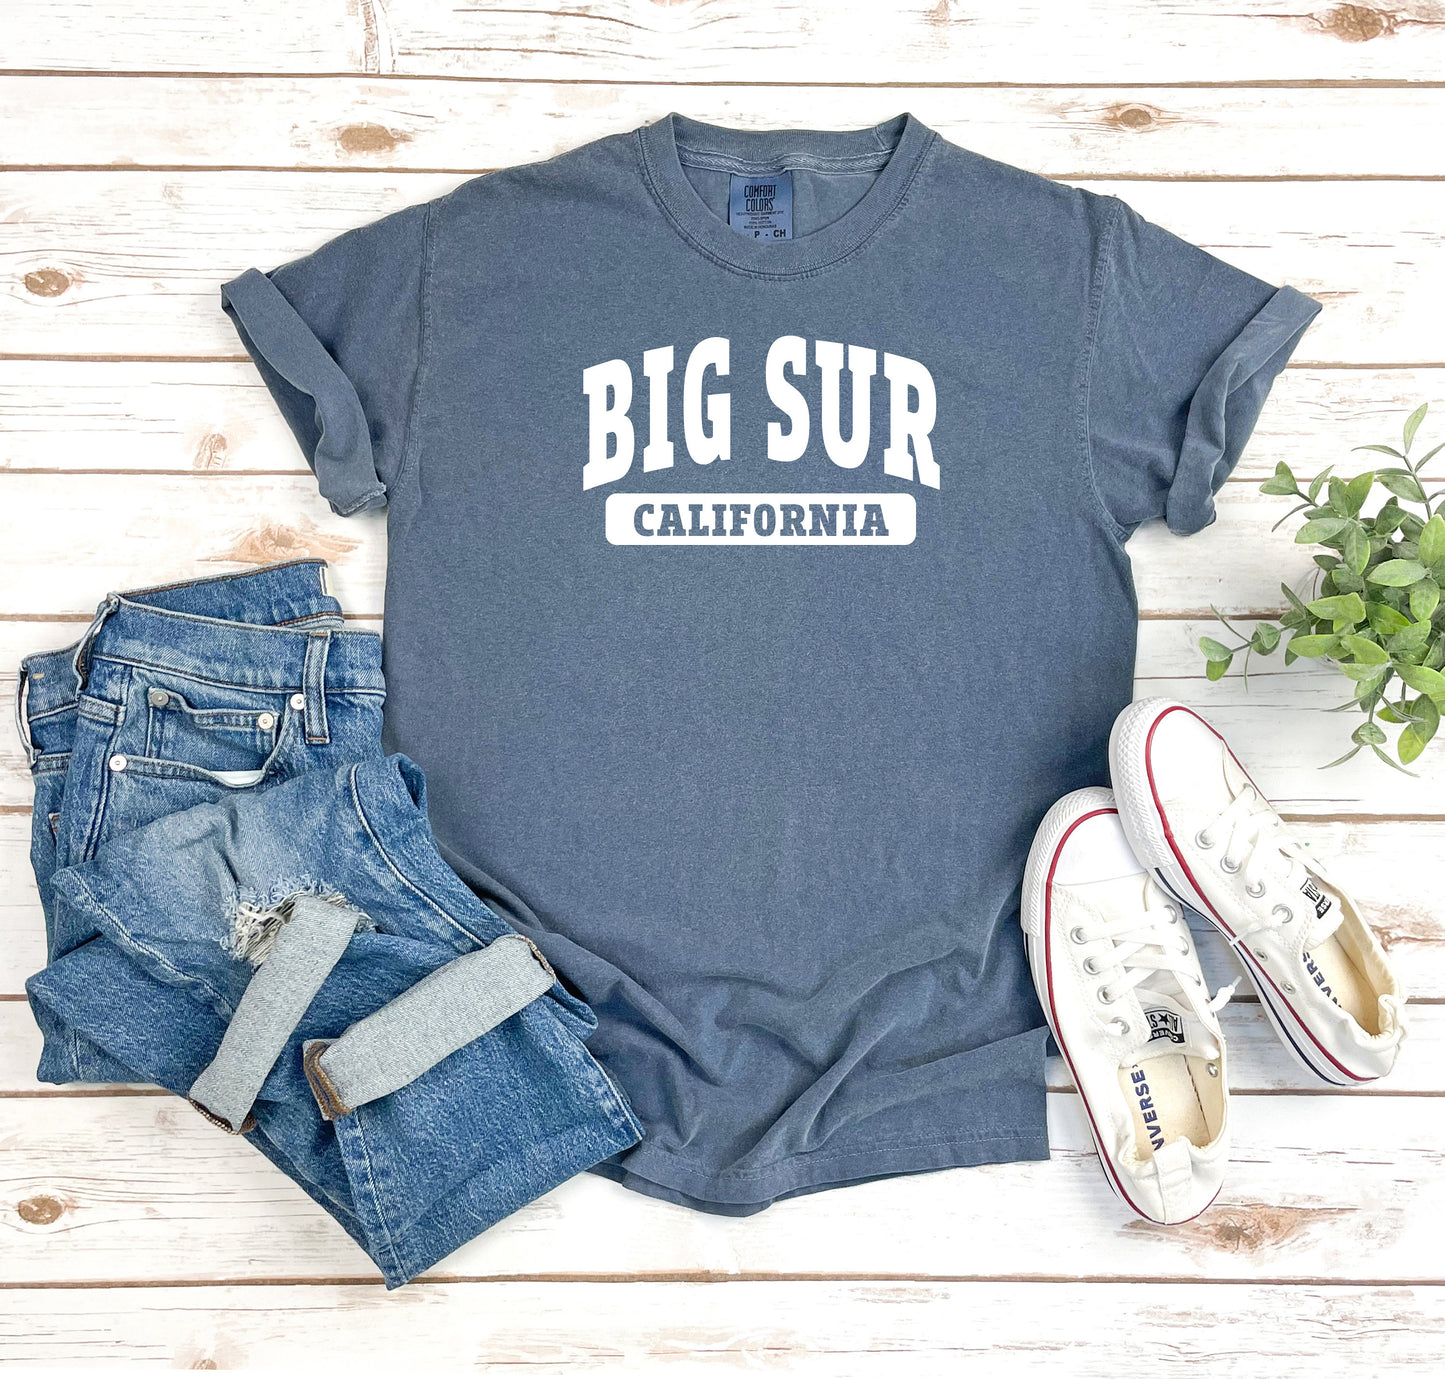 Big Sur California tshirt